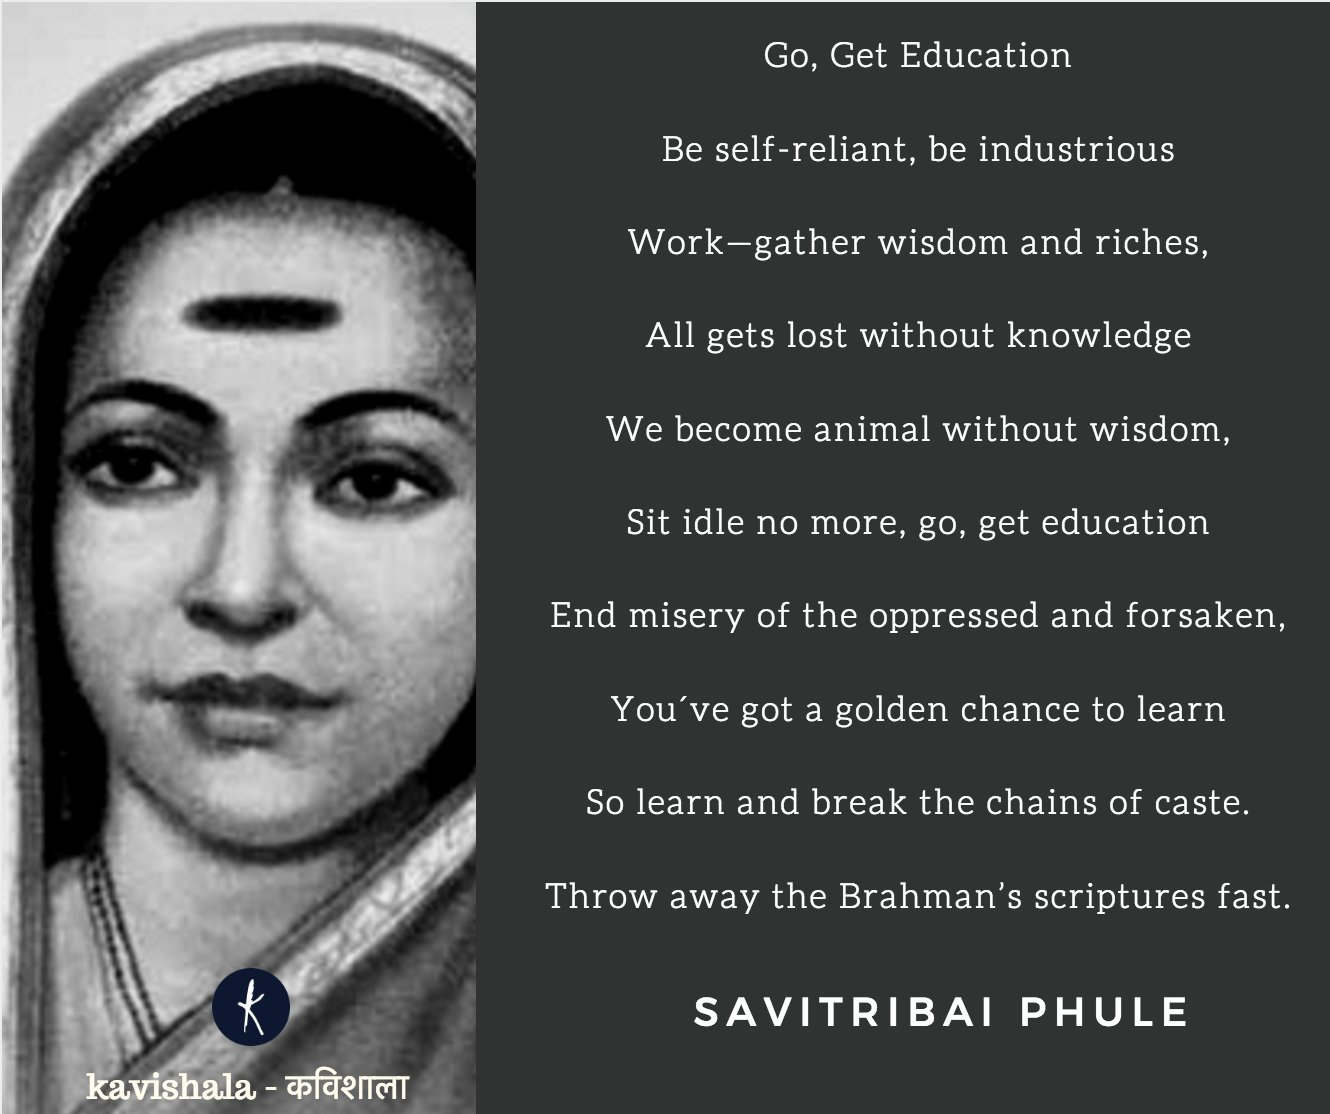 Savitribai Phule - Go, get education